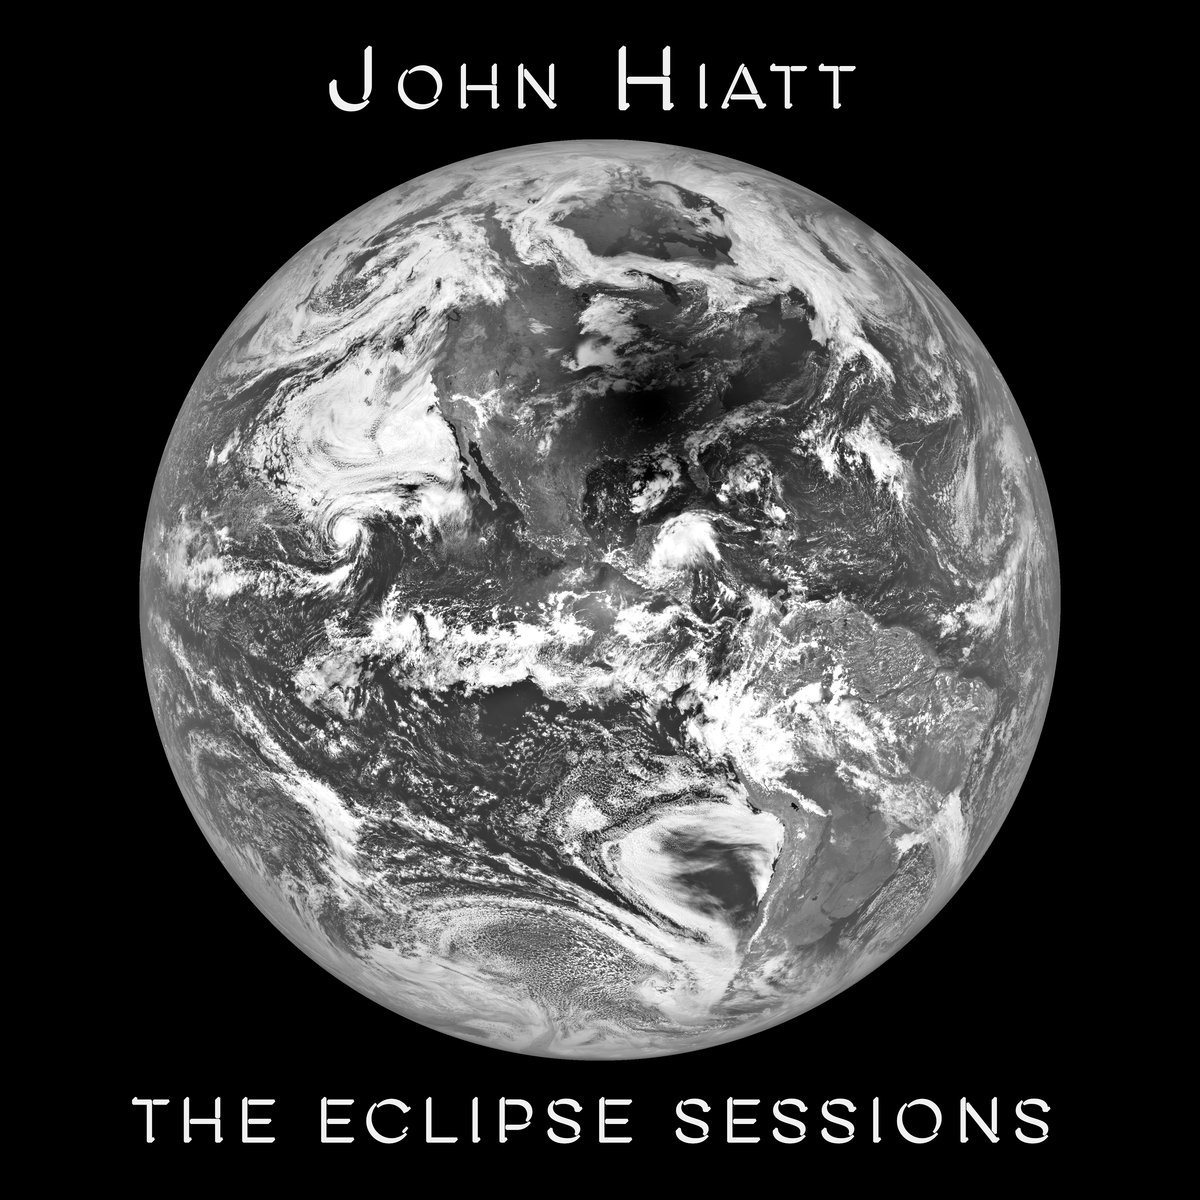 John Hiatt - The Eclipse Sessions (2018) 24bit FLAC Download